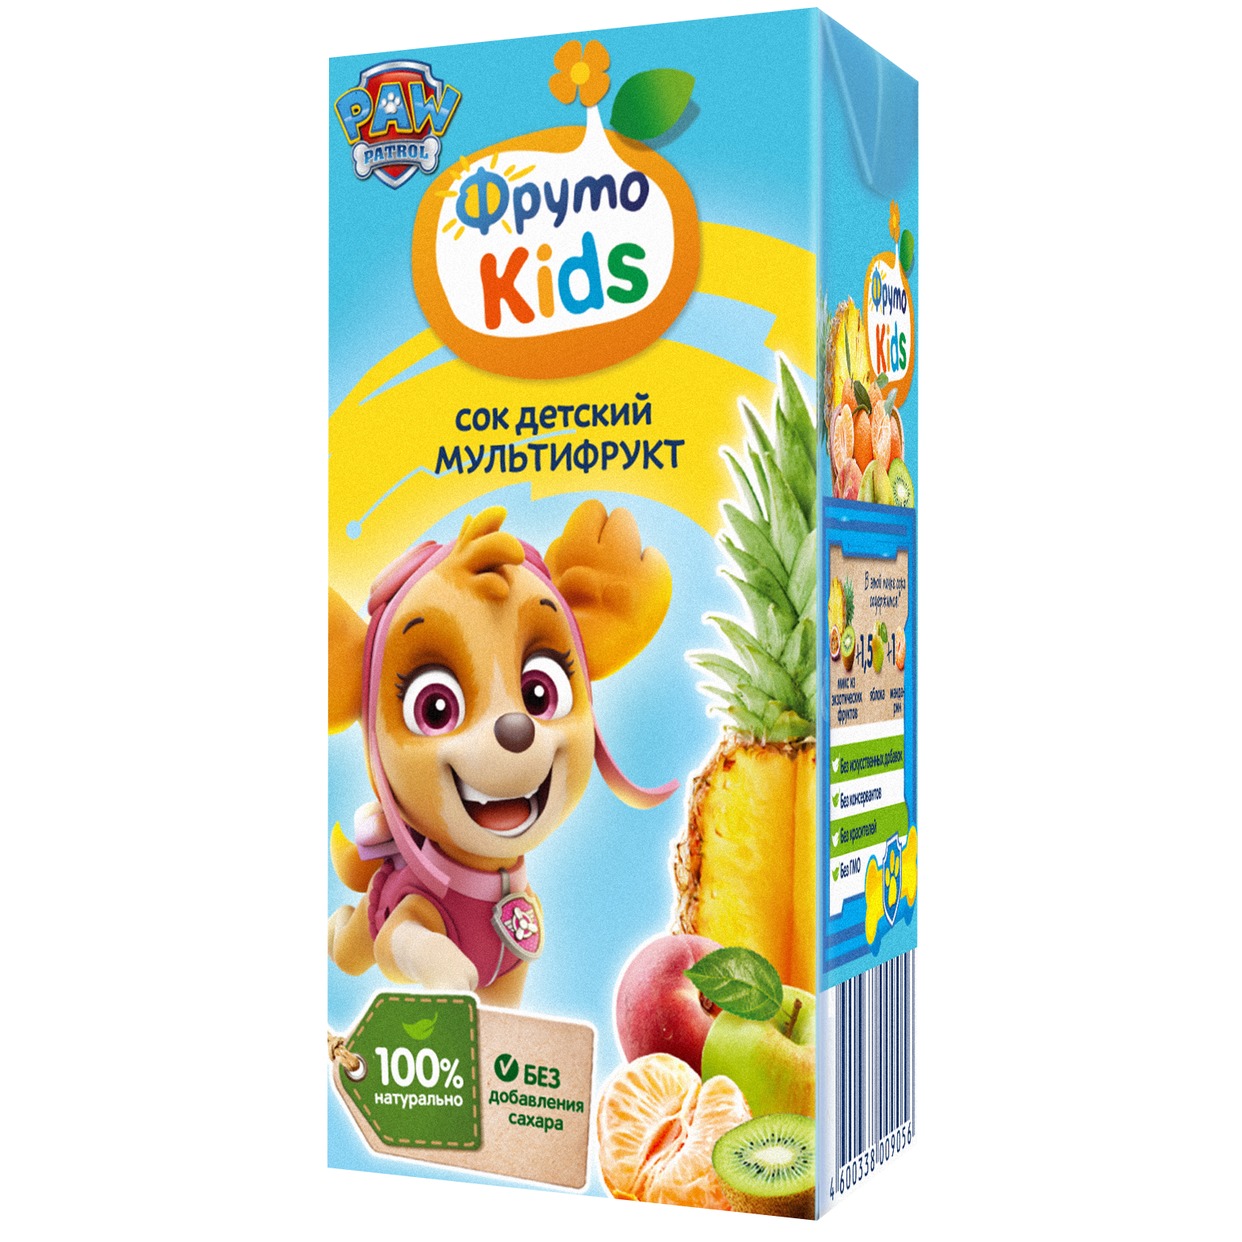 ФрутоKids 0,2л Сок мультифруктовый для питания детей раннего возраста по акции в Пятерочке